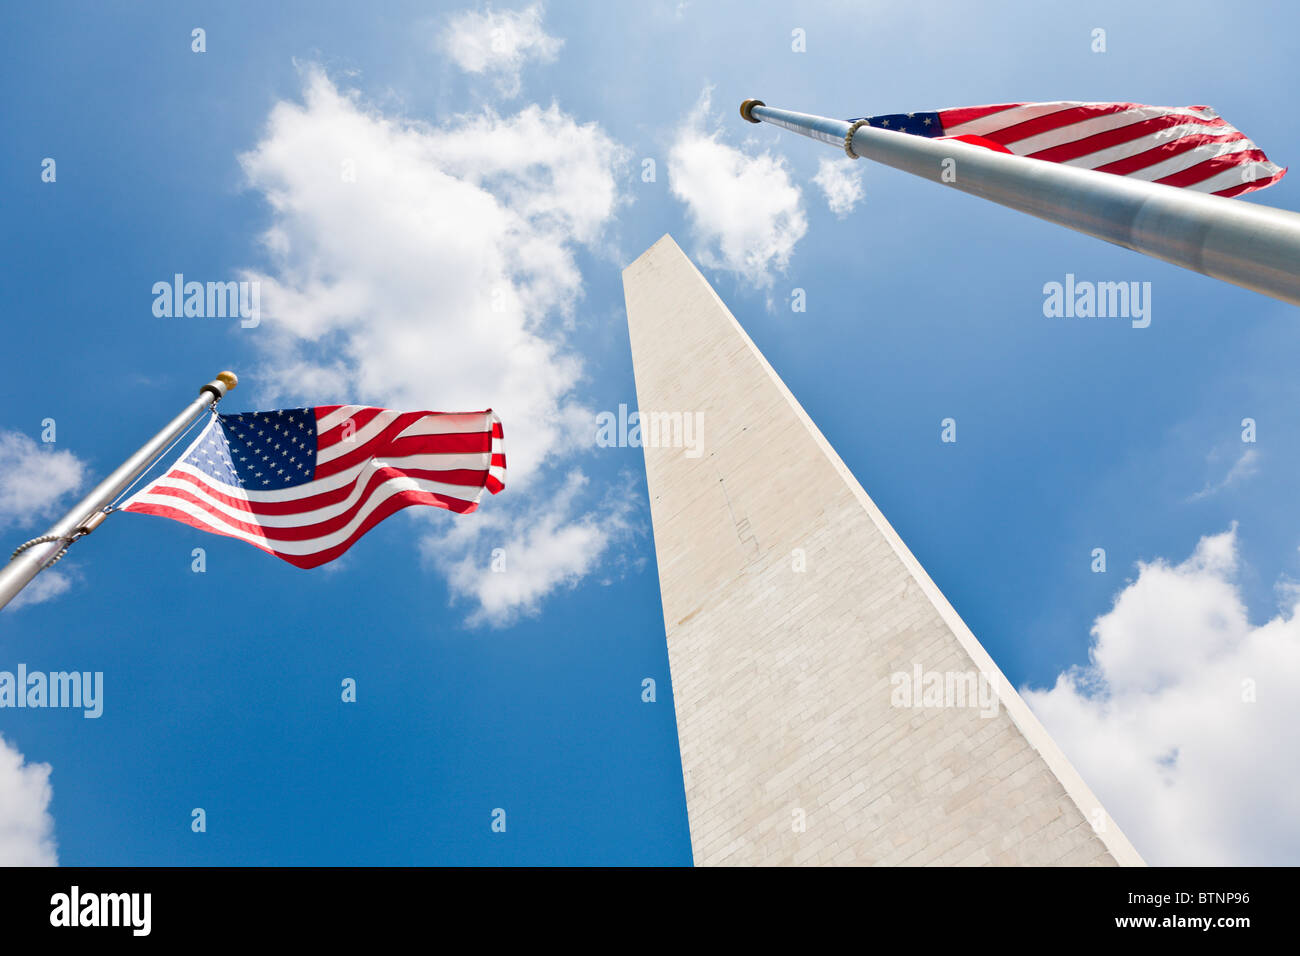 Washington DC - Sep 2009 - American flags at base of the Washington Monument in Washington DC Stock Photo